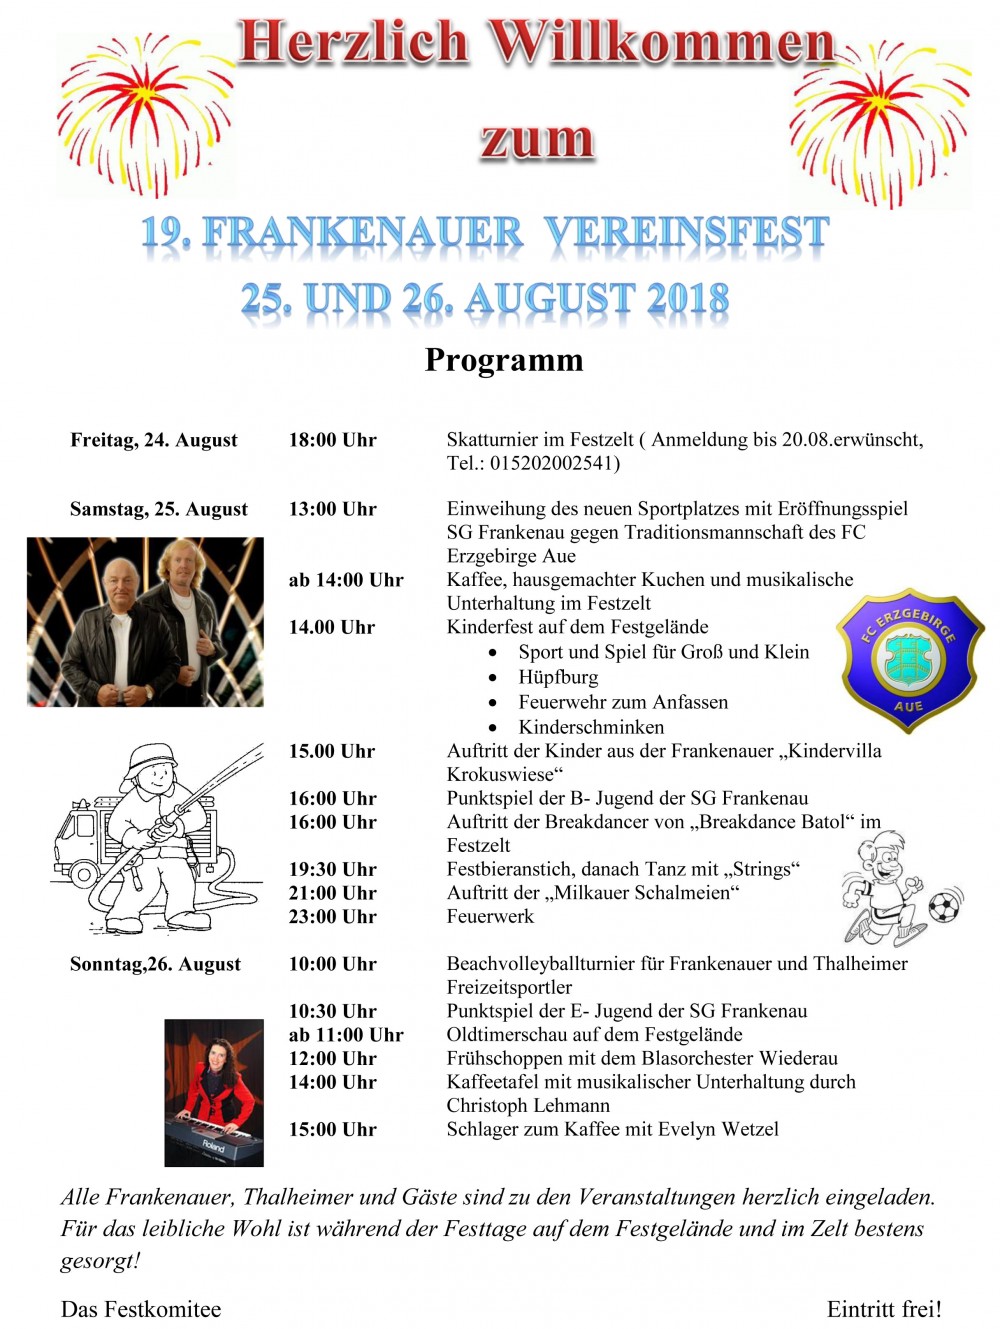 19. Vereinsfest in Frankenau